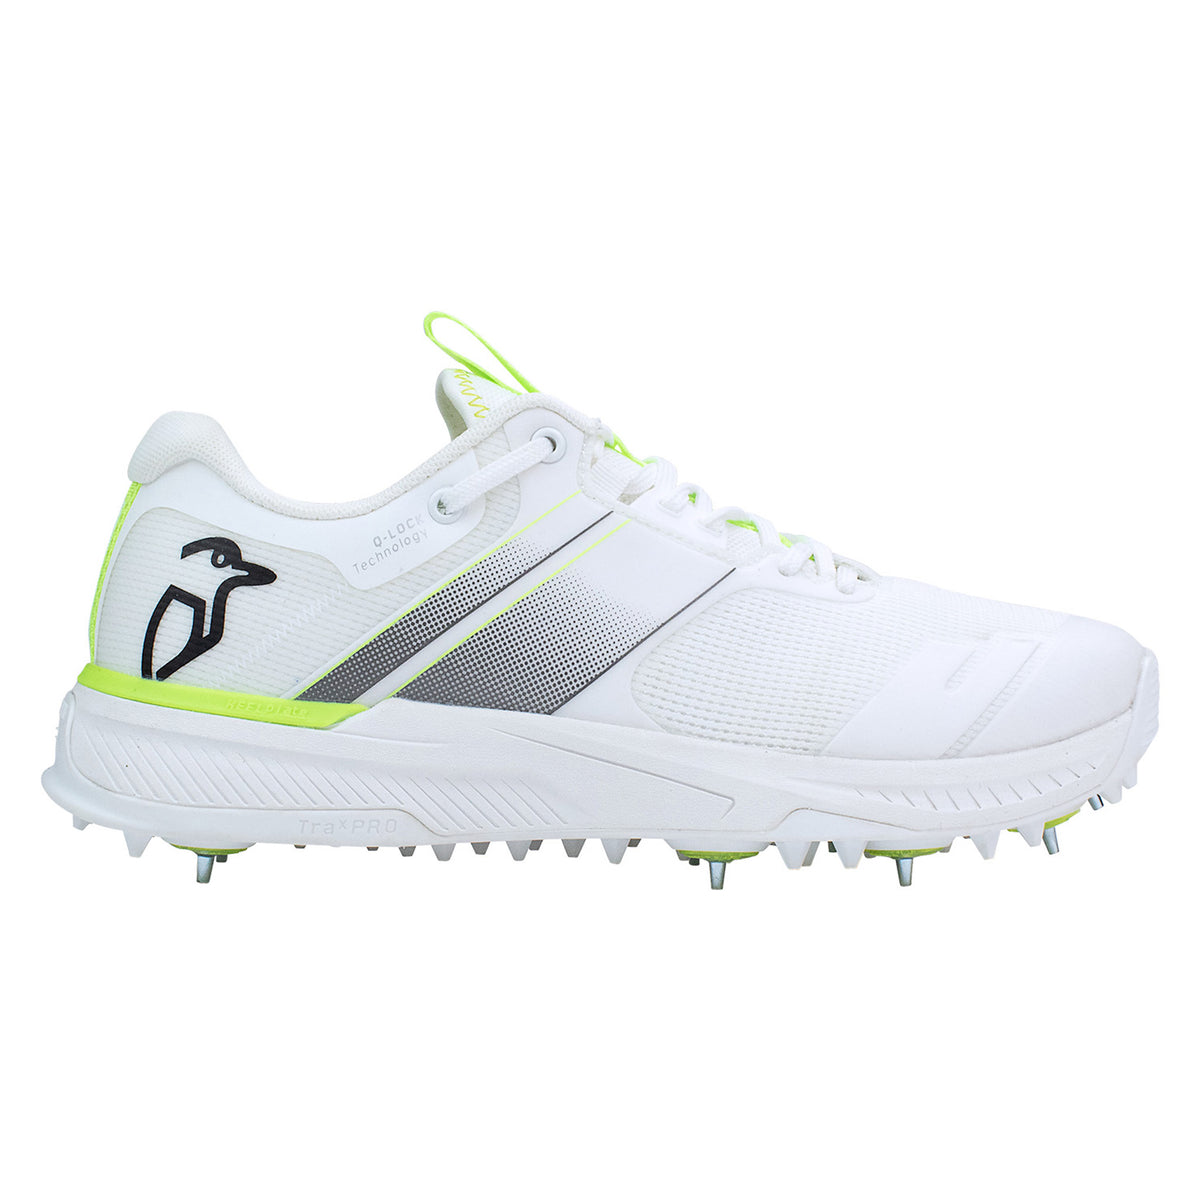 Kookaburra KC Players Spike Cricket Shoes: White/Lime